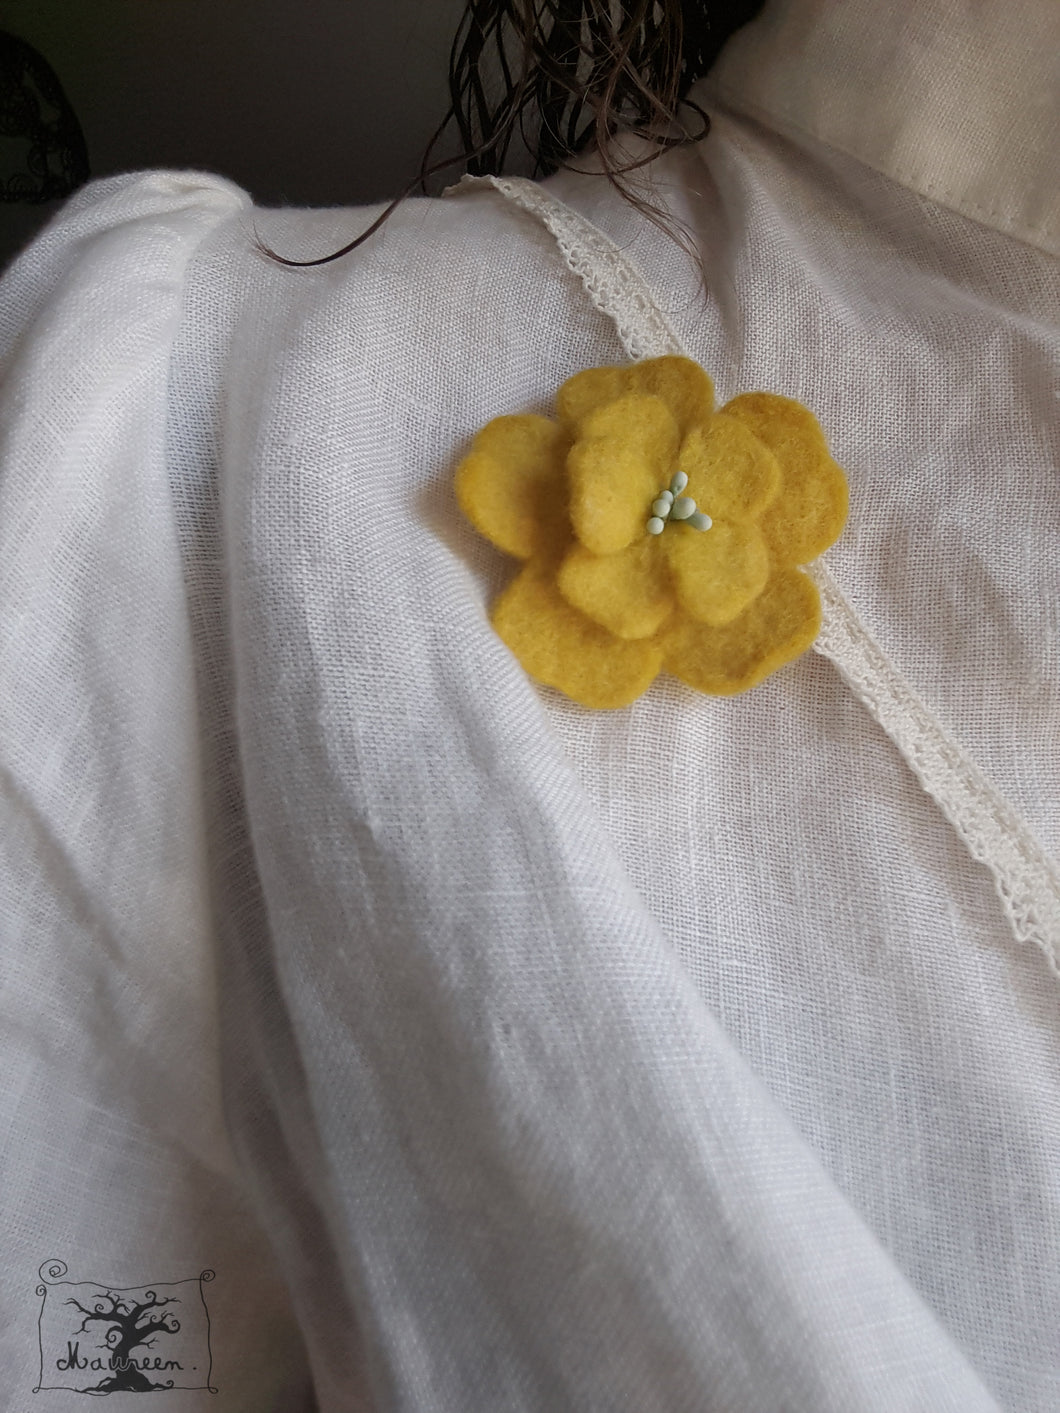 broche fleur d'aubépine jaune soleil (teinture végétale)